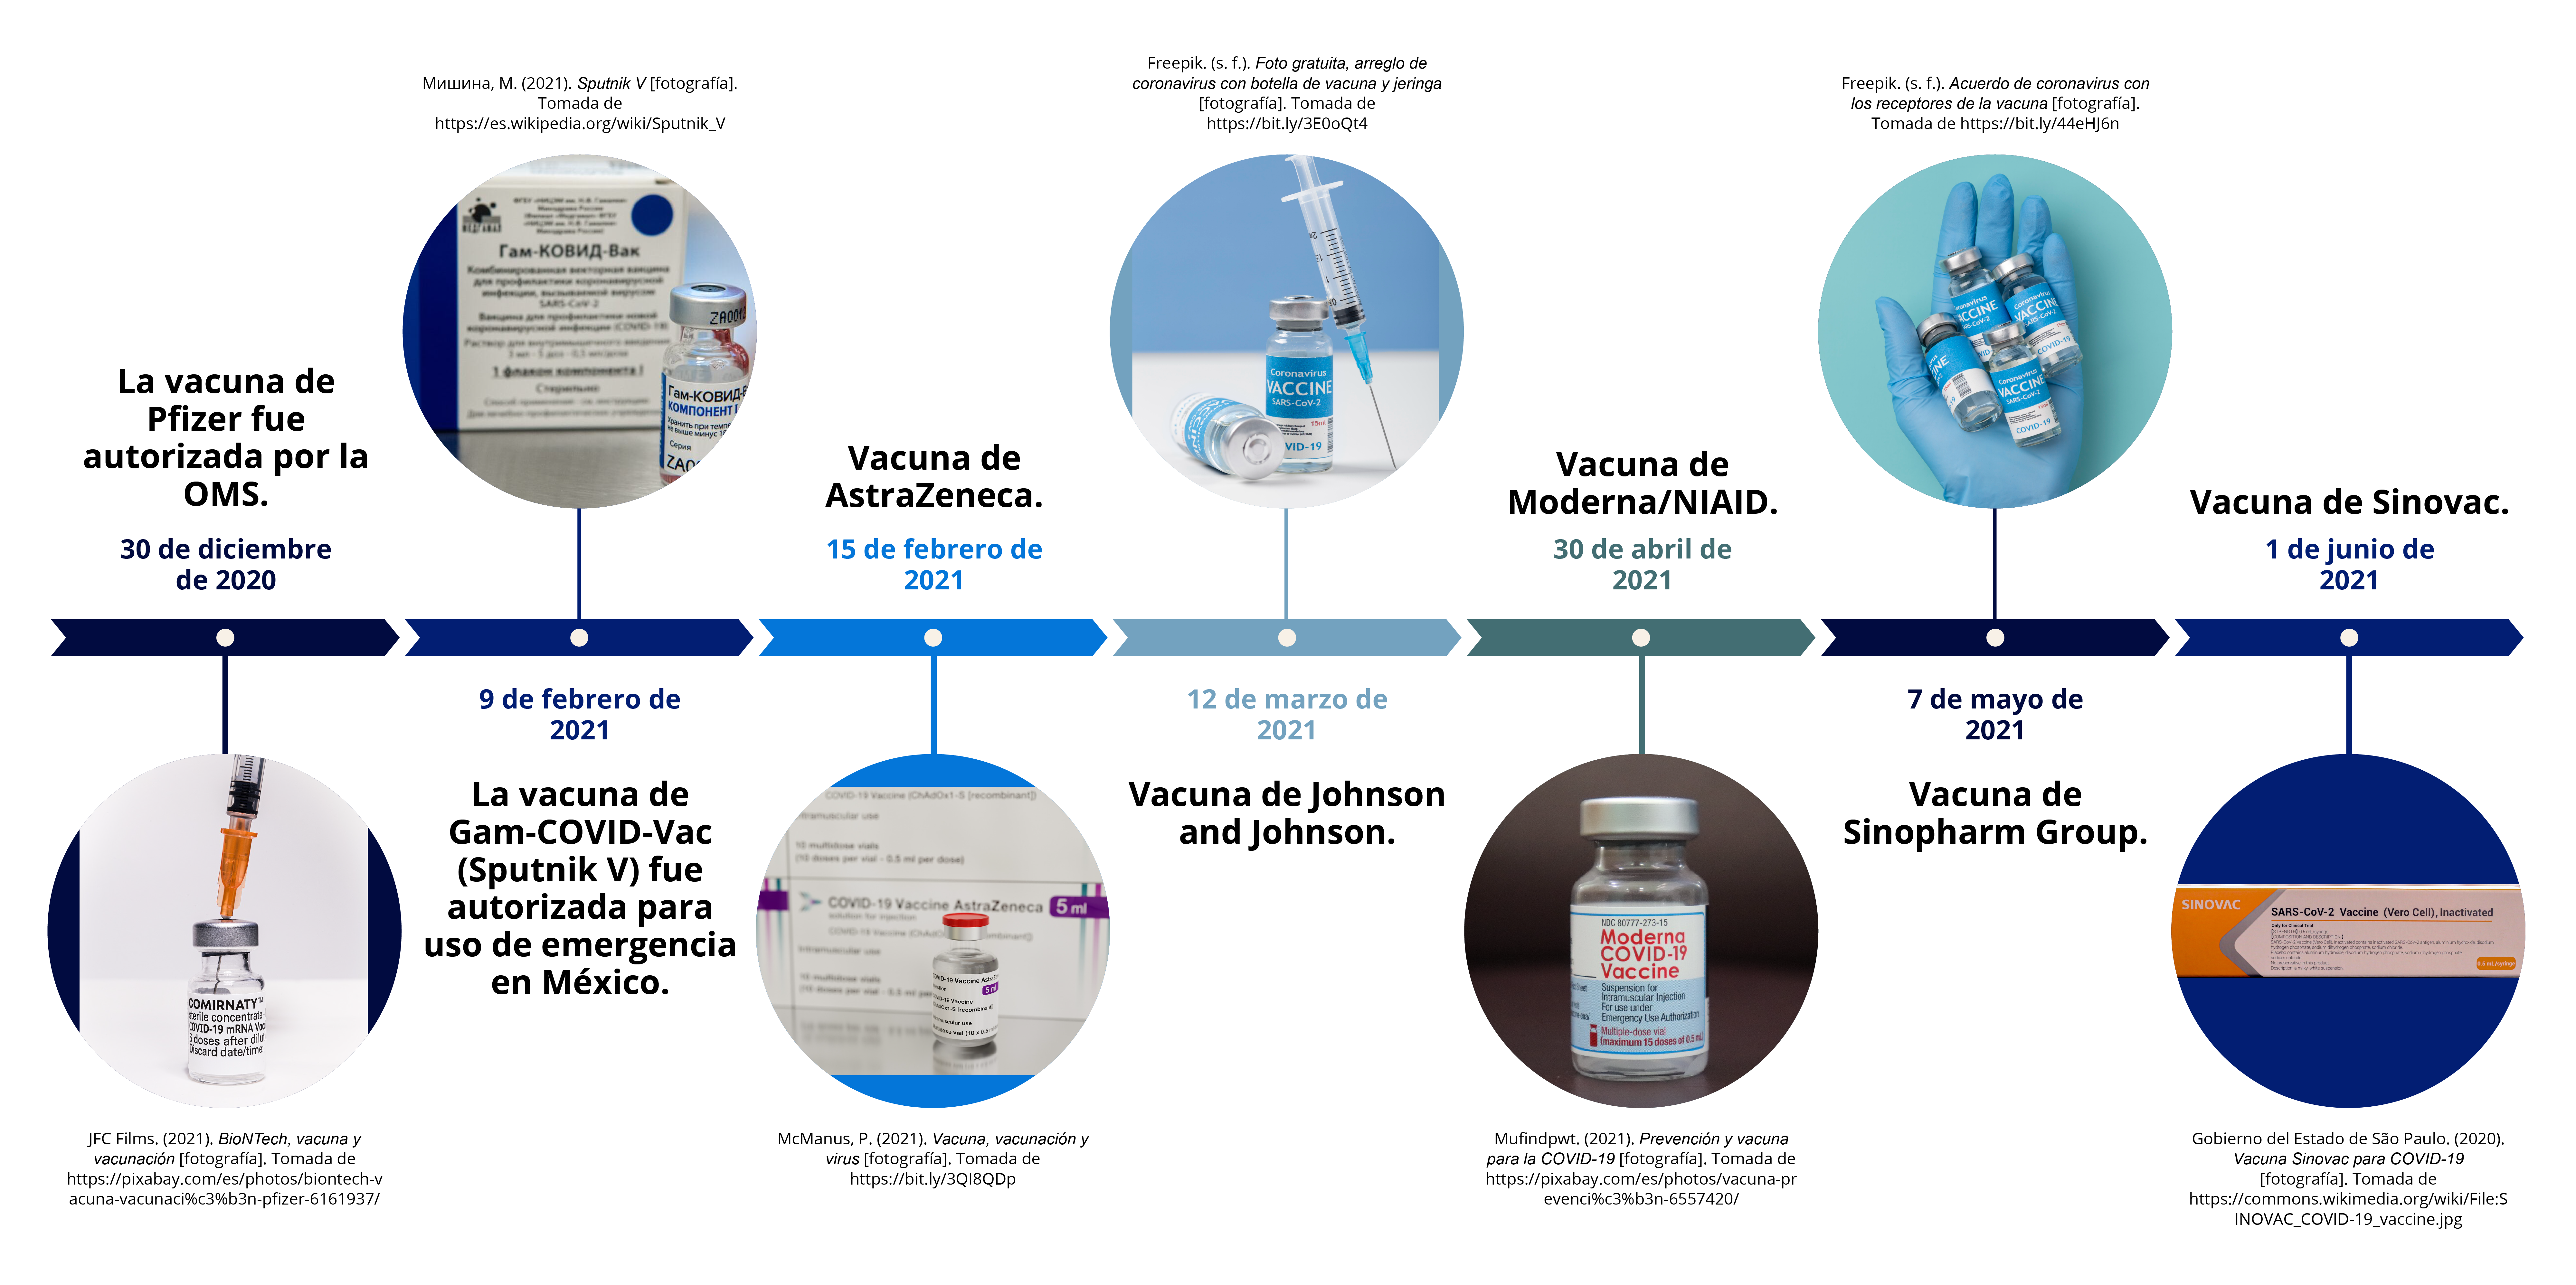 Aprobación de los diferentes tipos de vacunas contra SARS-CoV-2 a lo largo de la pandemia de COVID-19